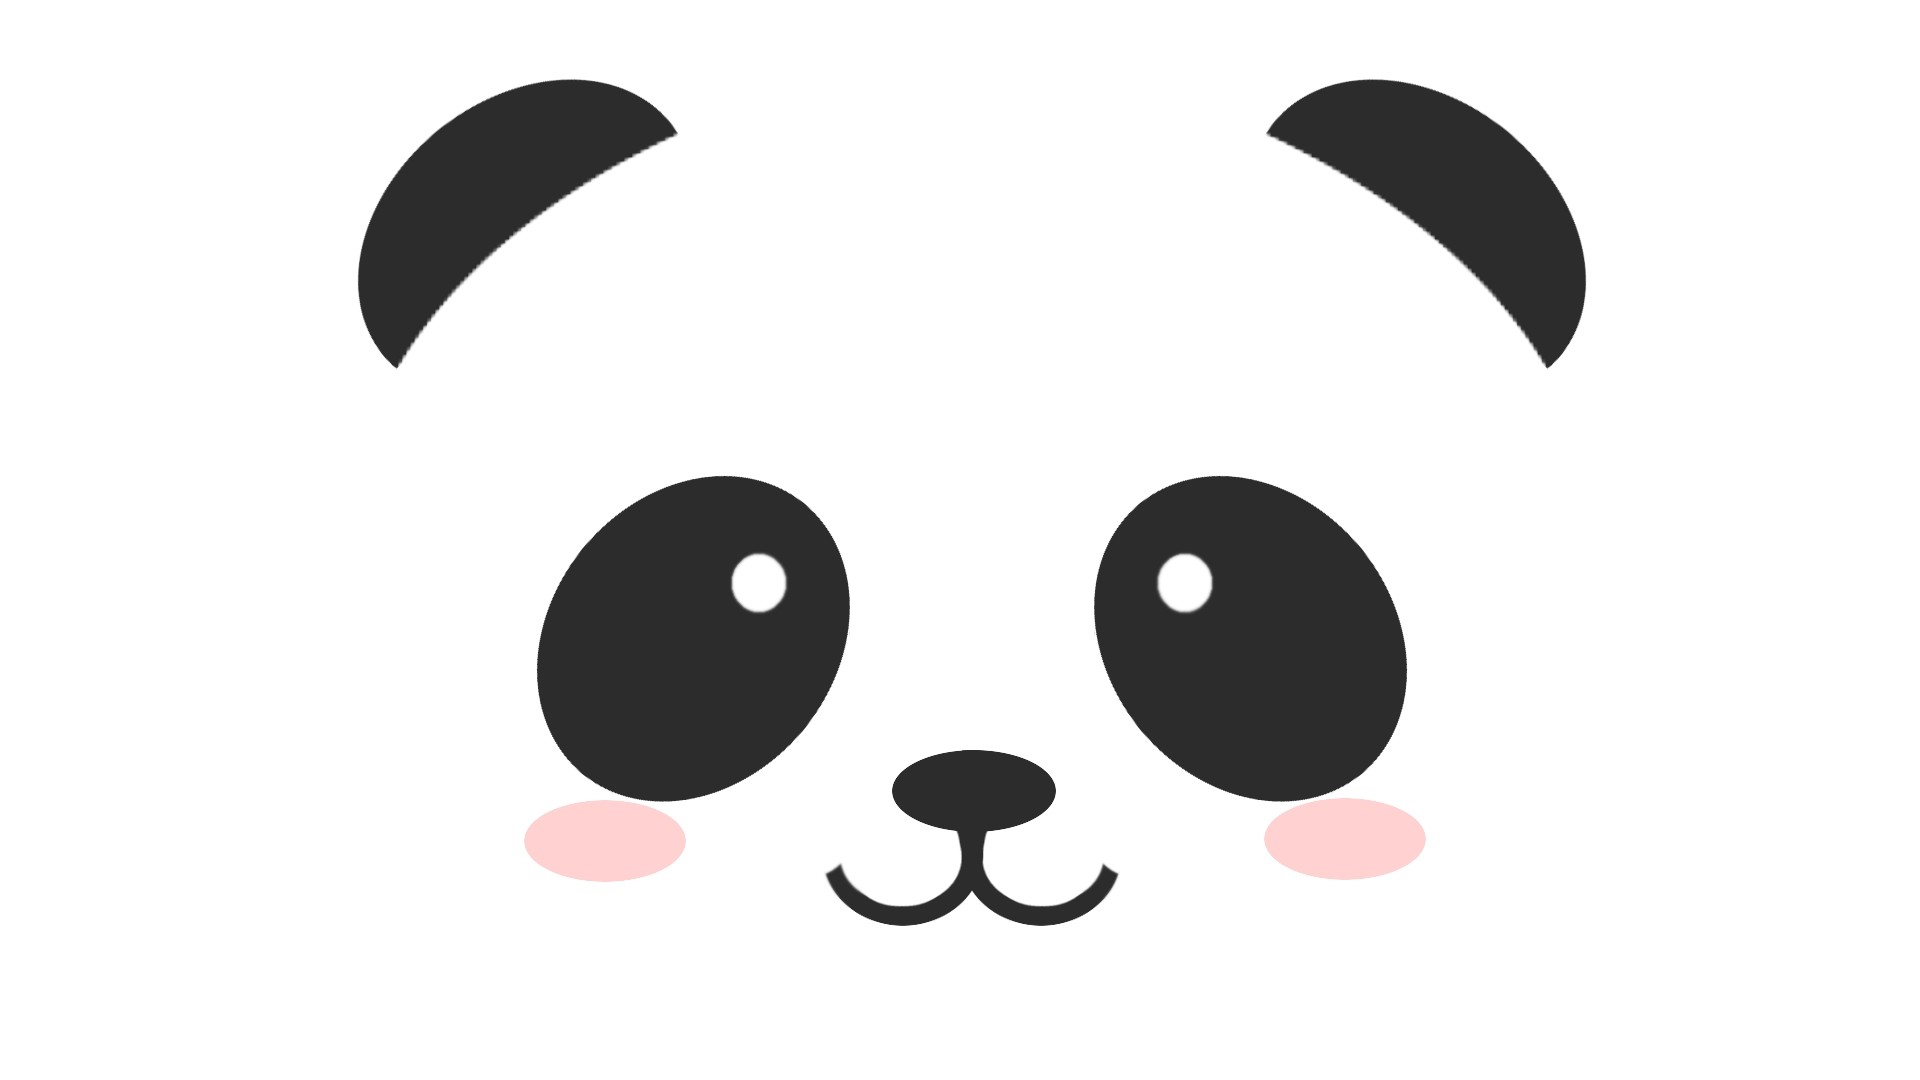 1920x1080 0 1280x720 Cartoon Panda Wallpapers  Cute Panda Wallpaper, Full HD  1080p, Best HD Cute Panda Pics.